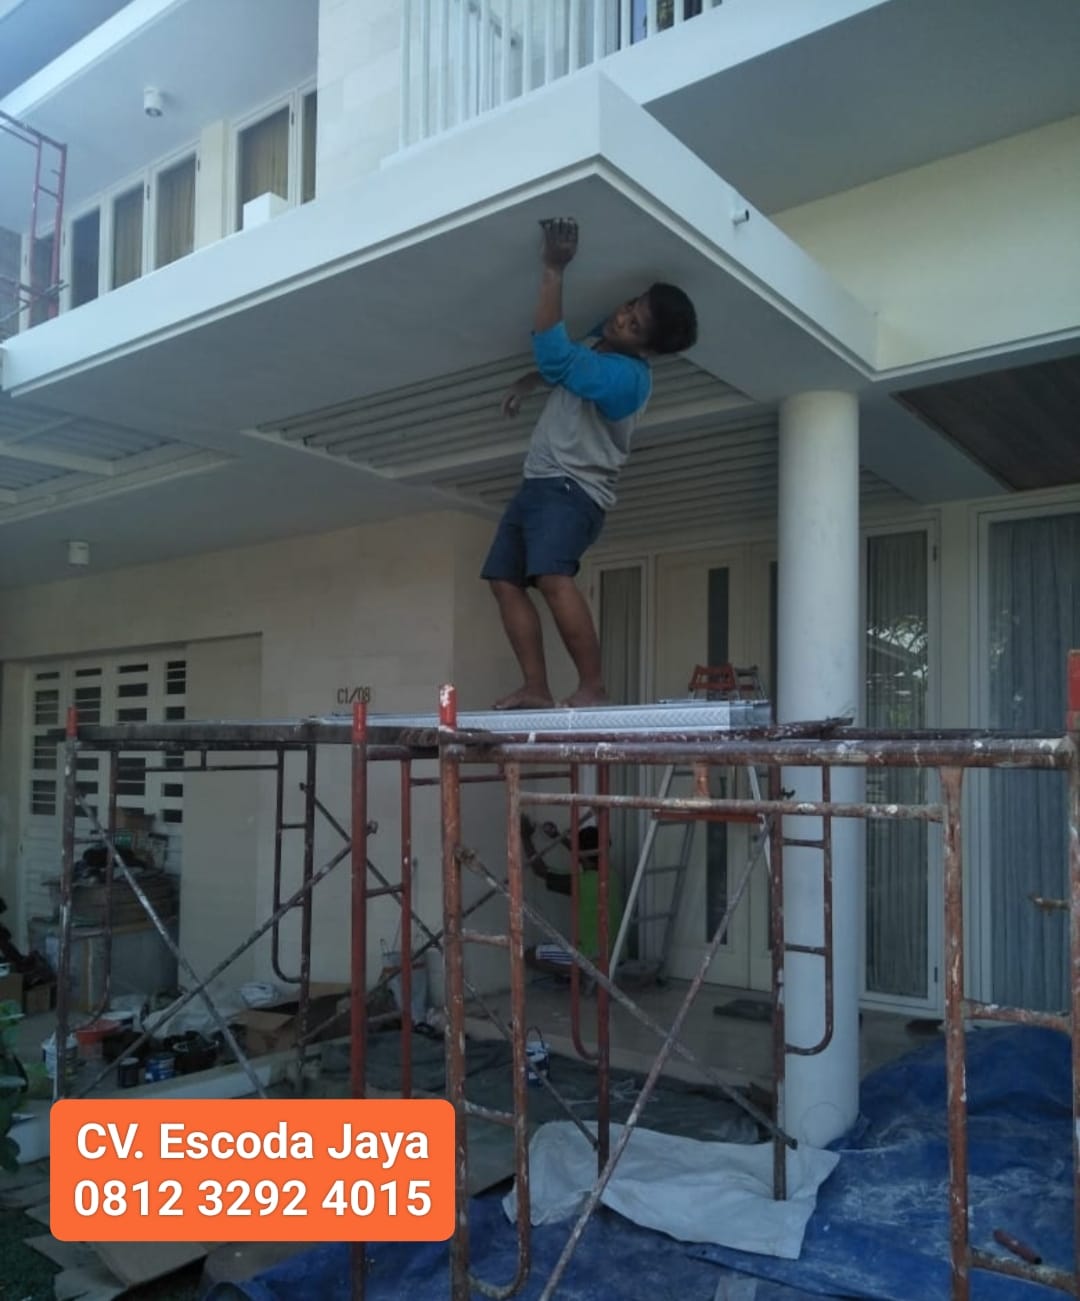 Harga Jasa Renovasi Rumah per Meter Surabaya